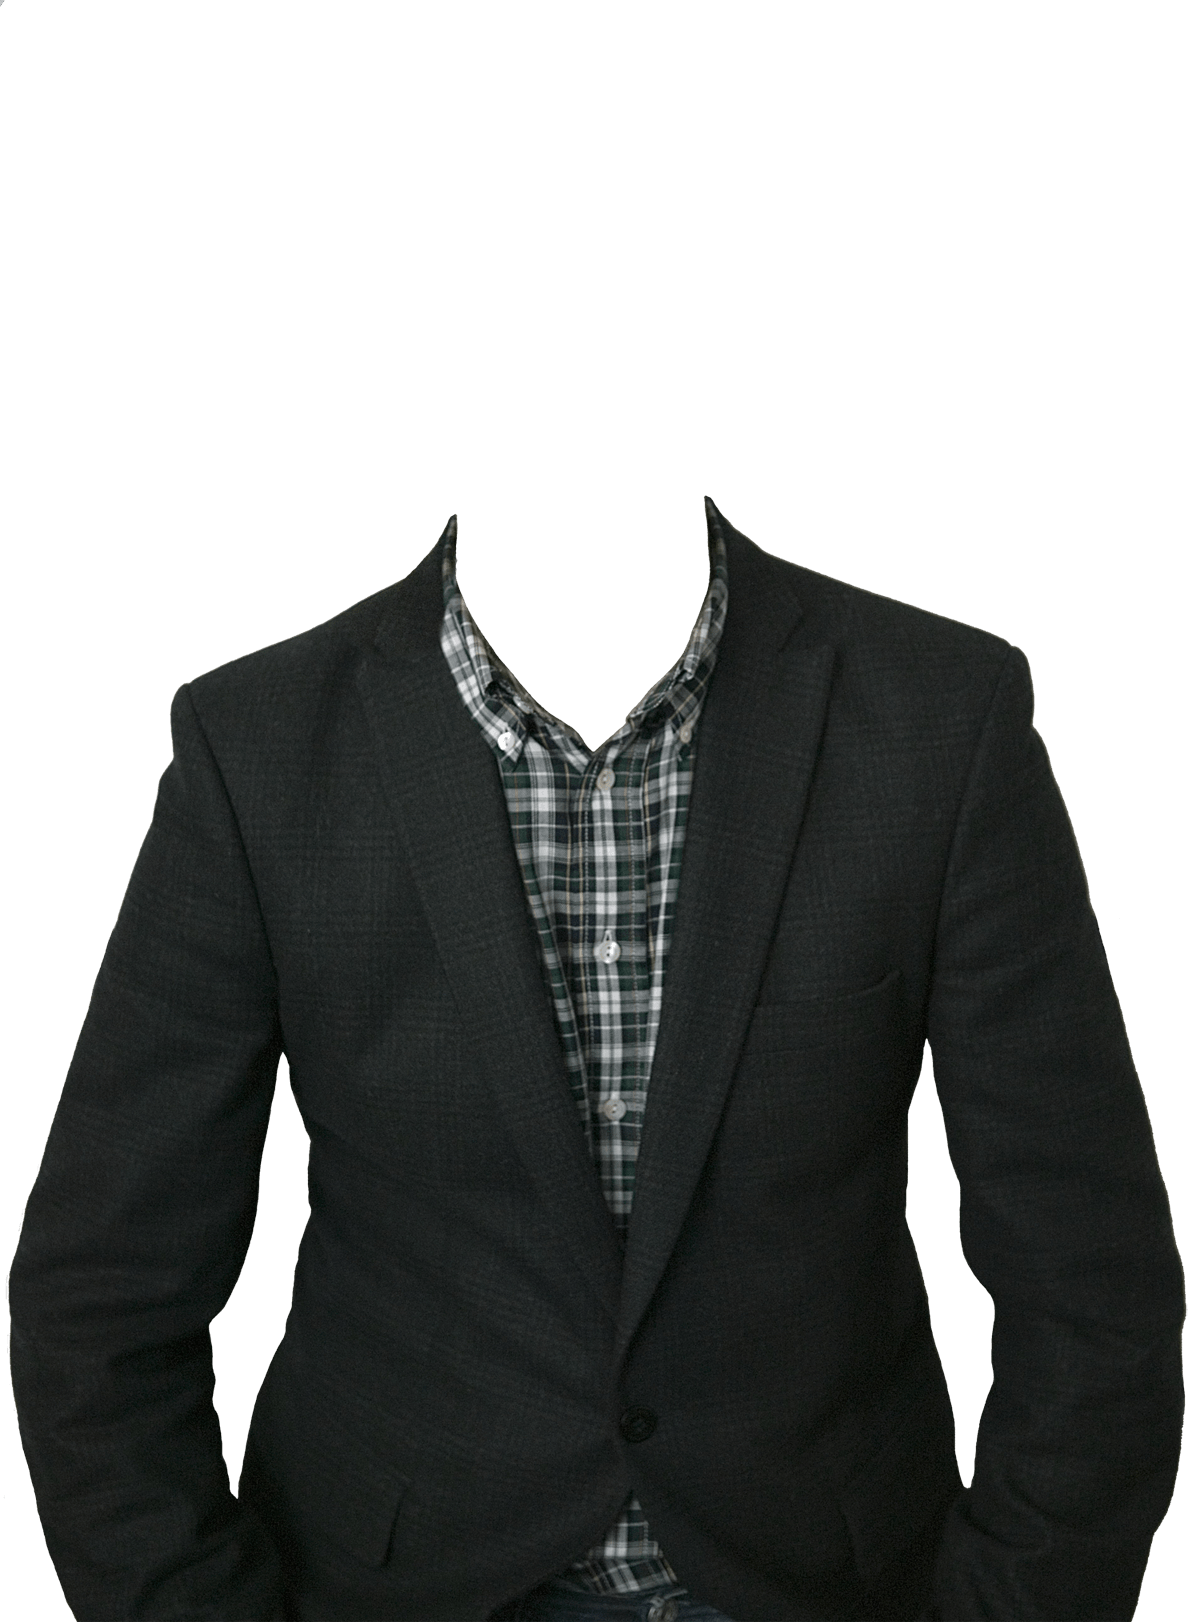 Download Suit For Men HQ PNG Image | FreePNGImg